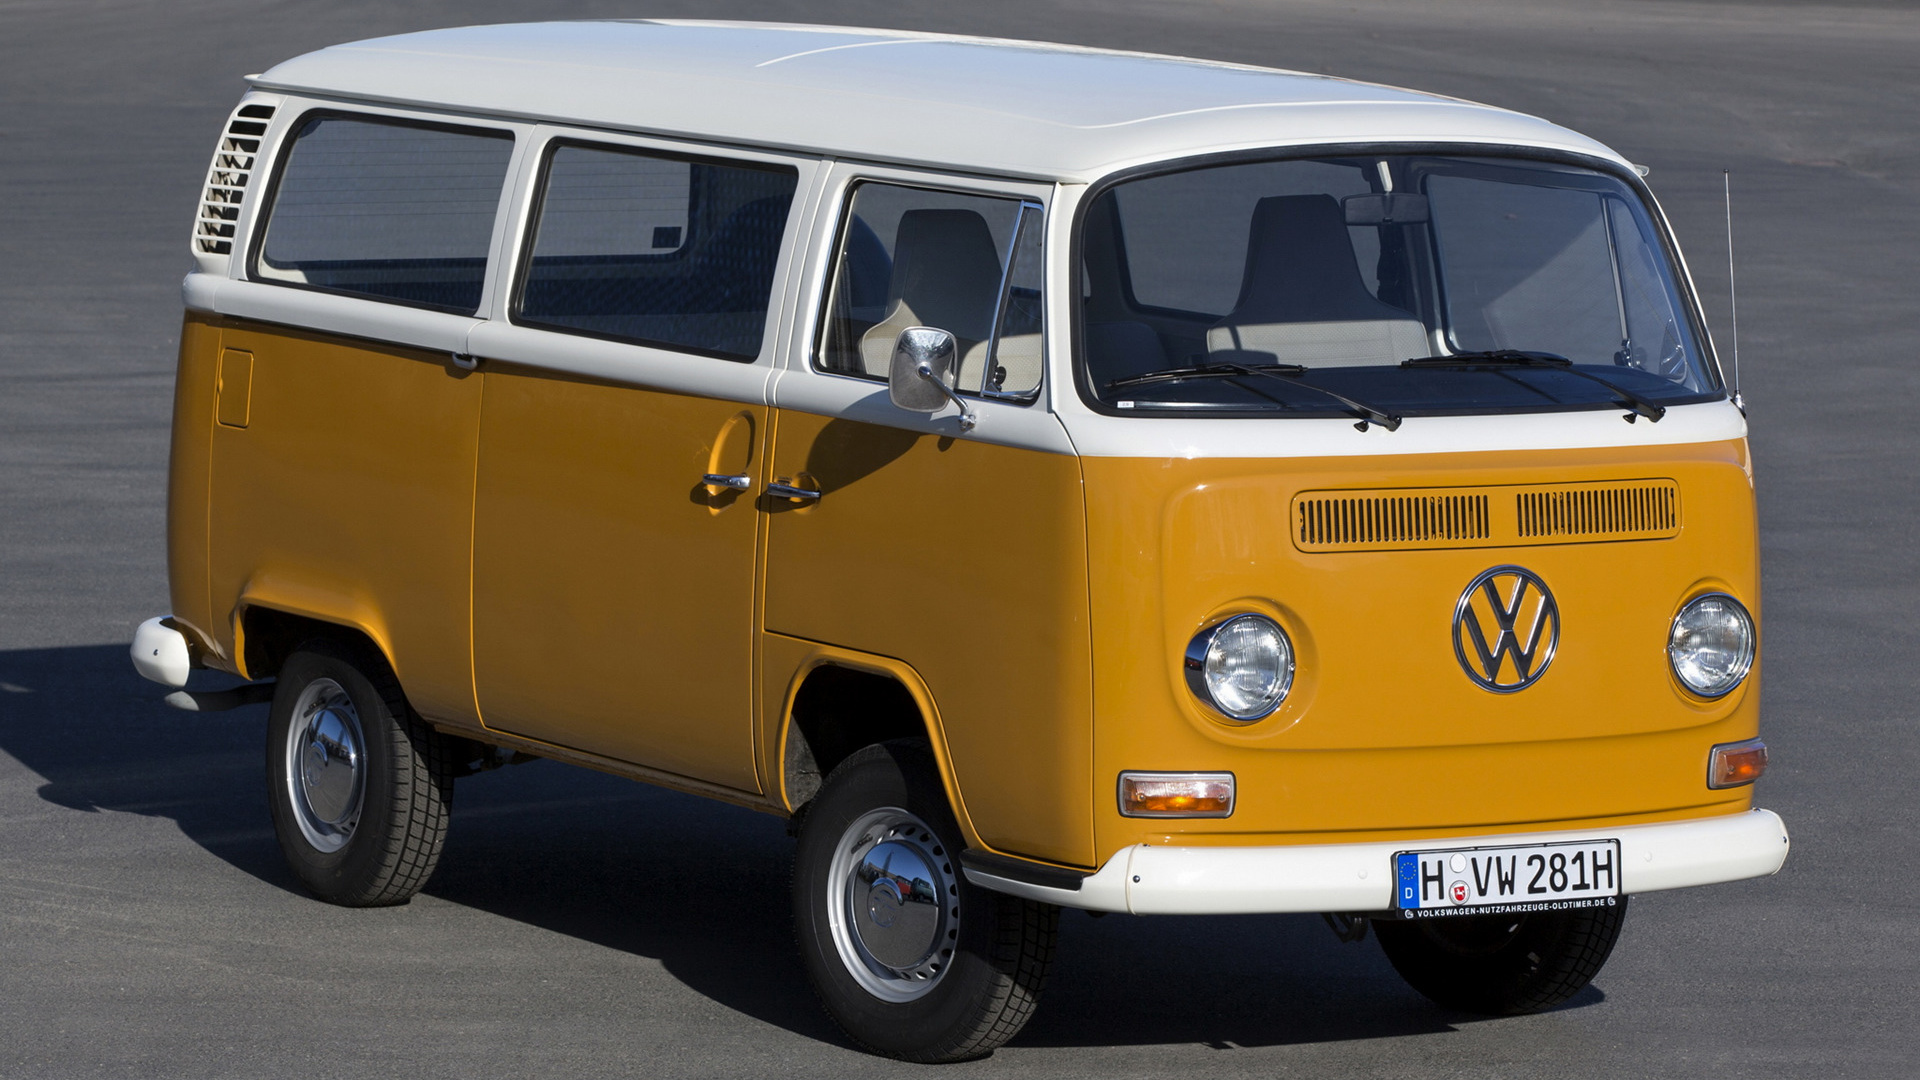 Vehicles Volkswagen Bus HD Wallpaper | Background Image